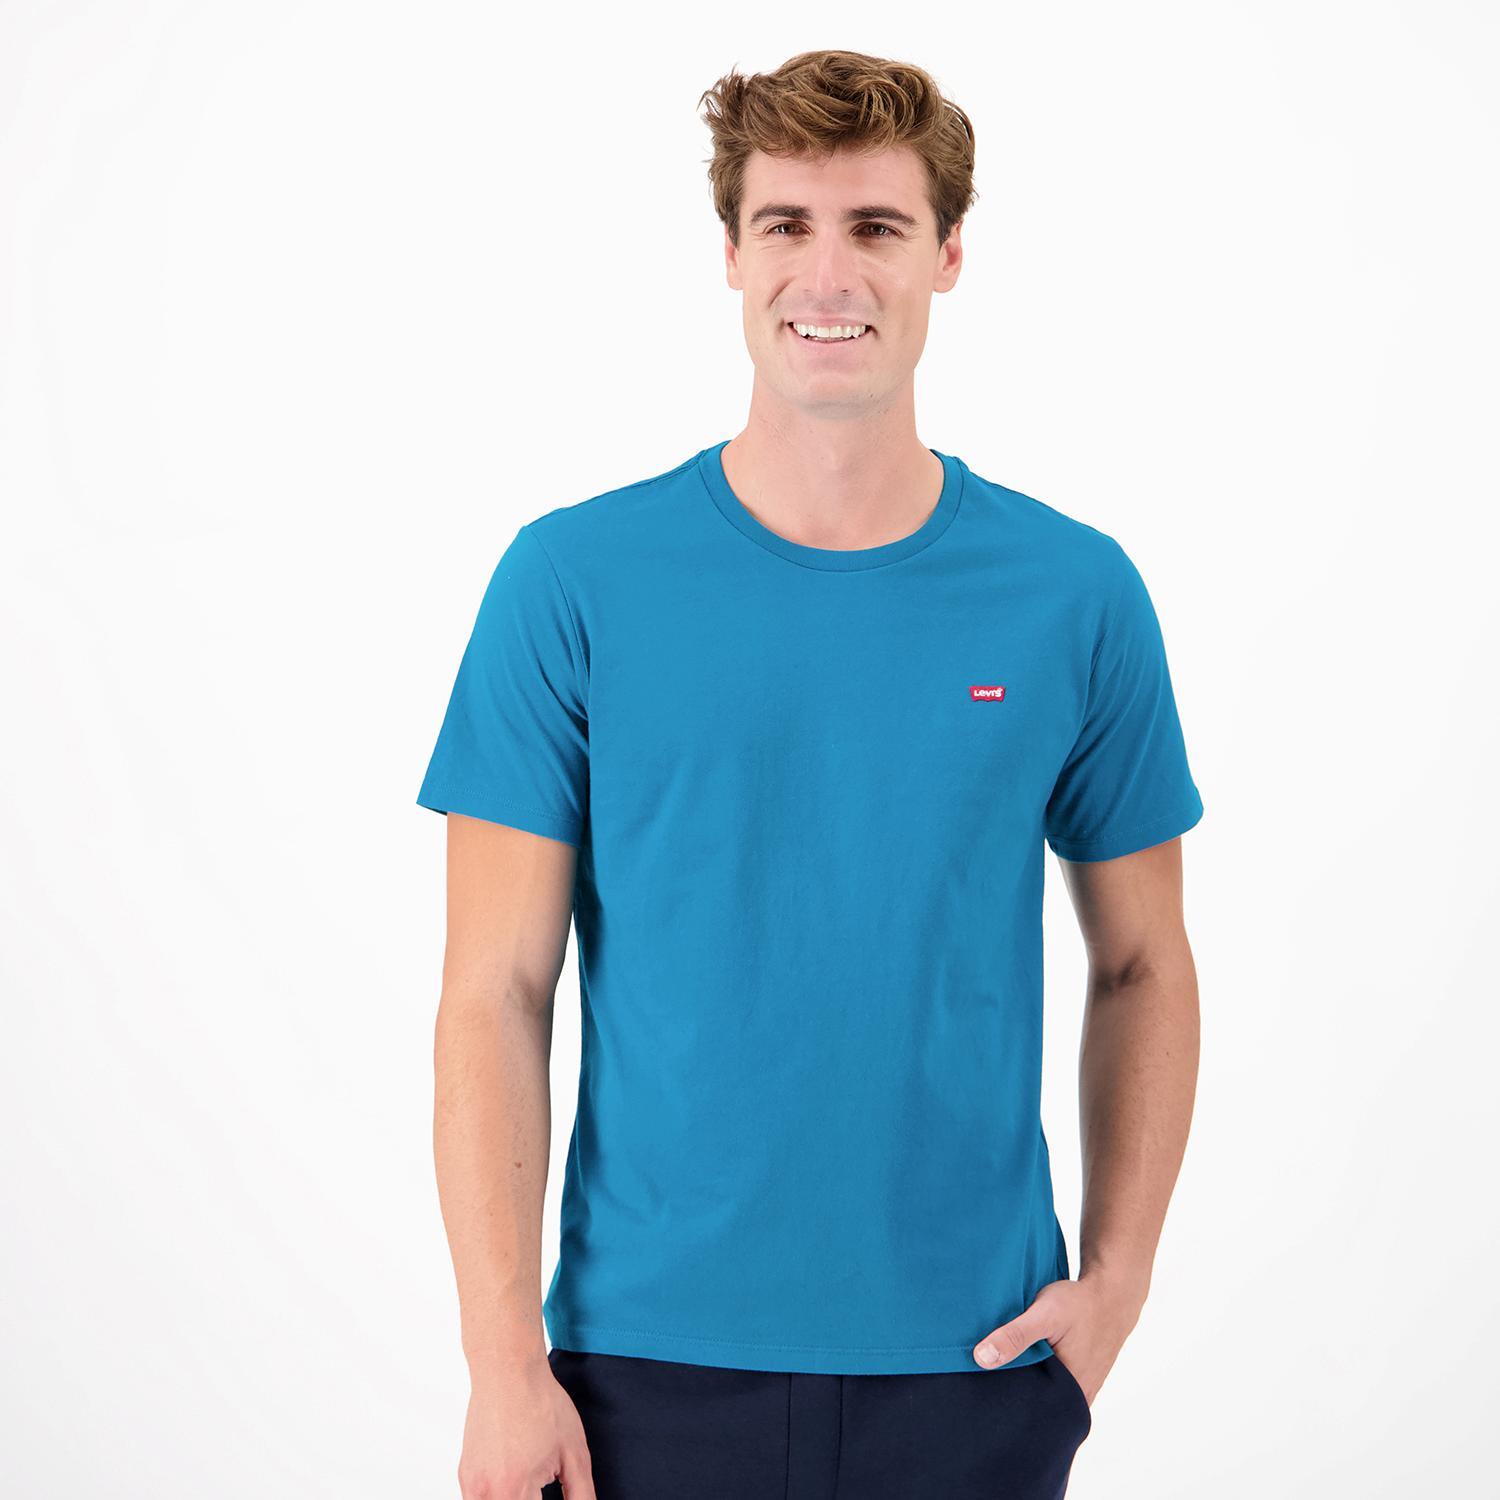 Levi's Original - Azul - T-shirt Homem tamanho M product